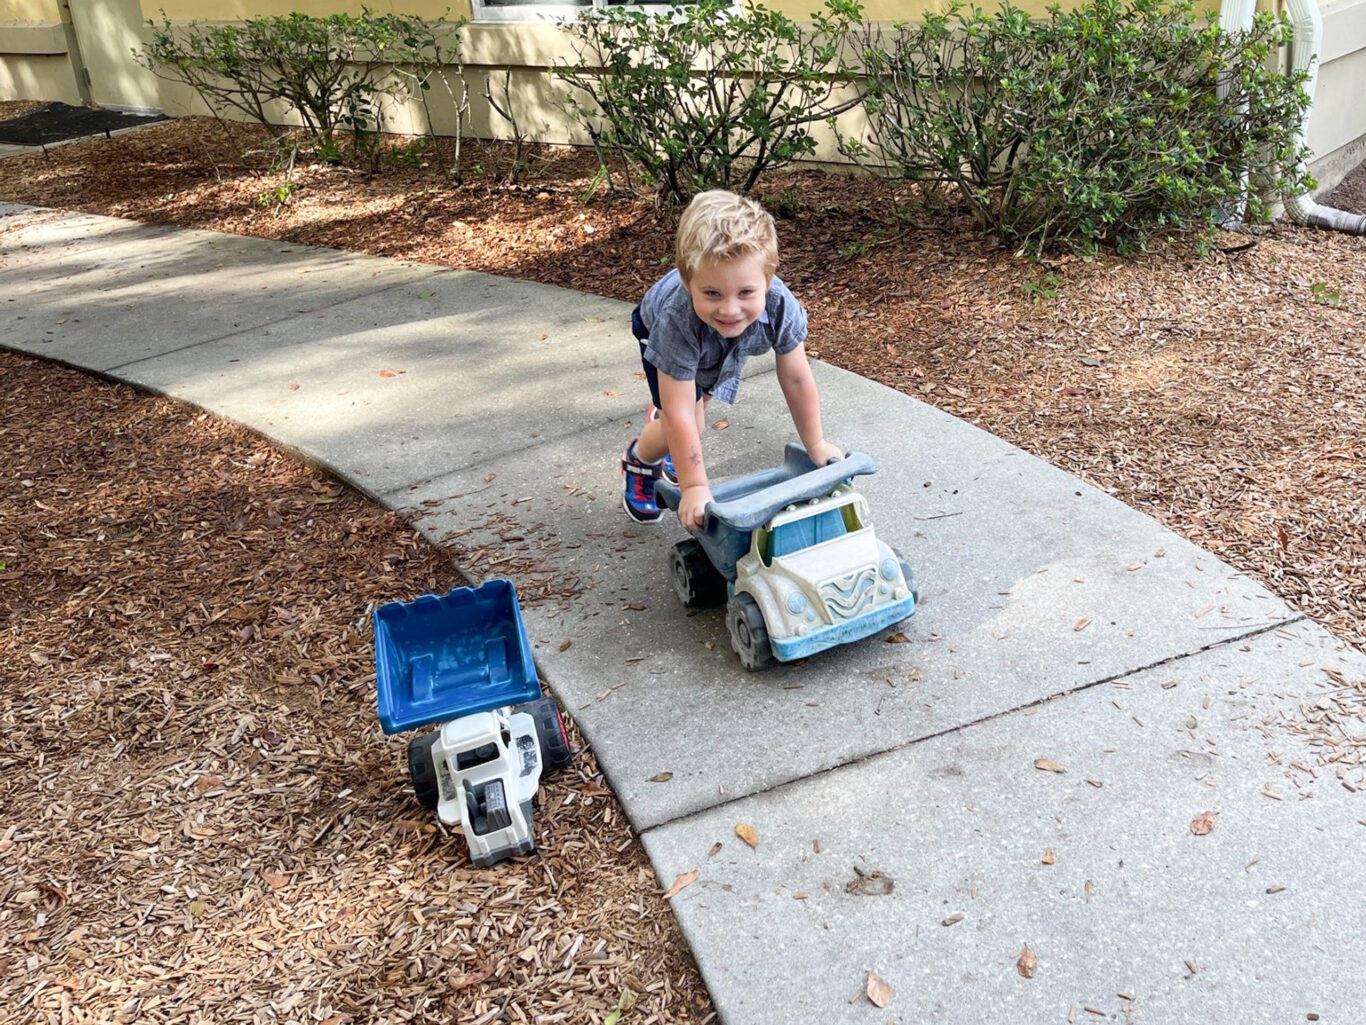 A preschool boy playing with a toy truck on a sidewalk.